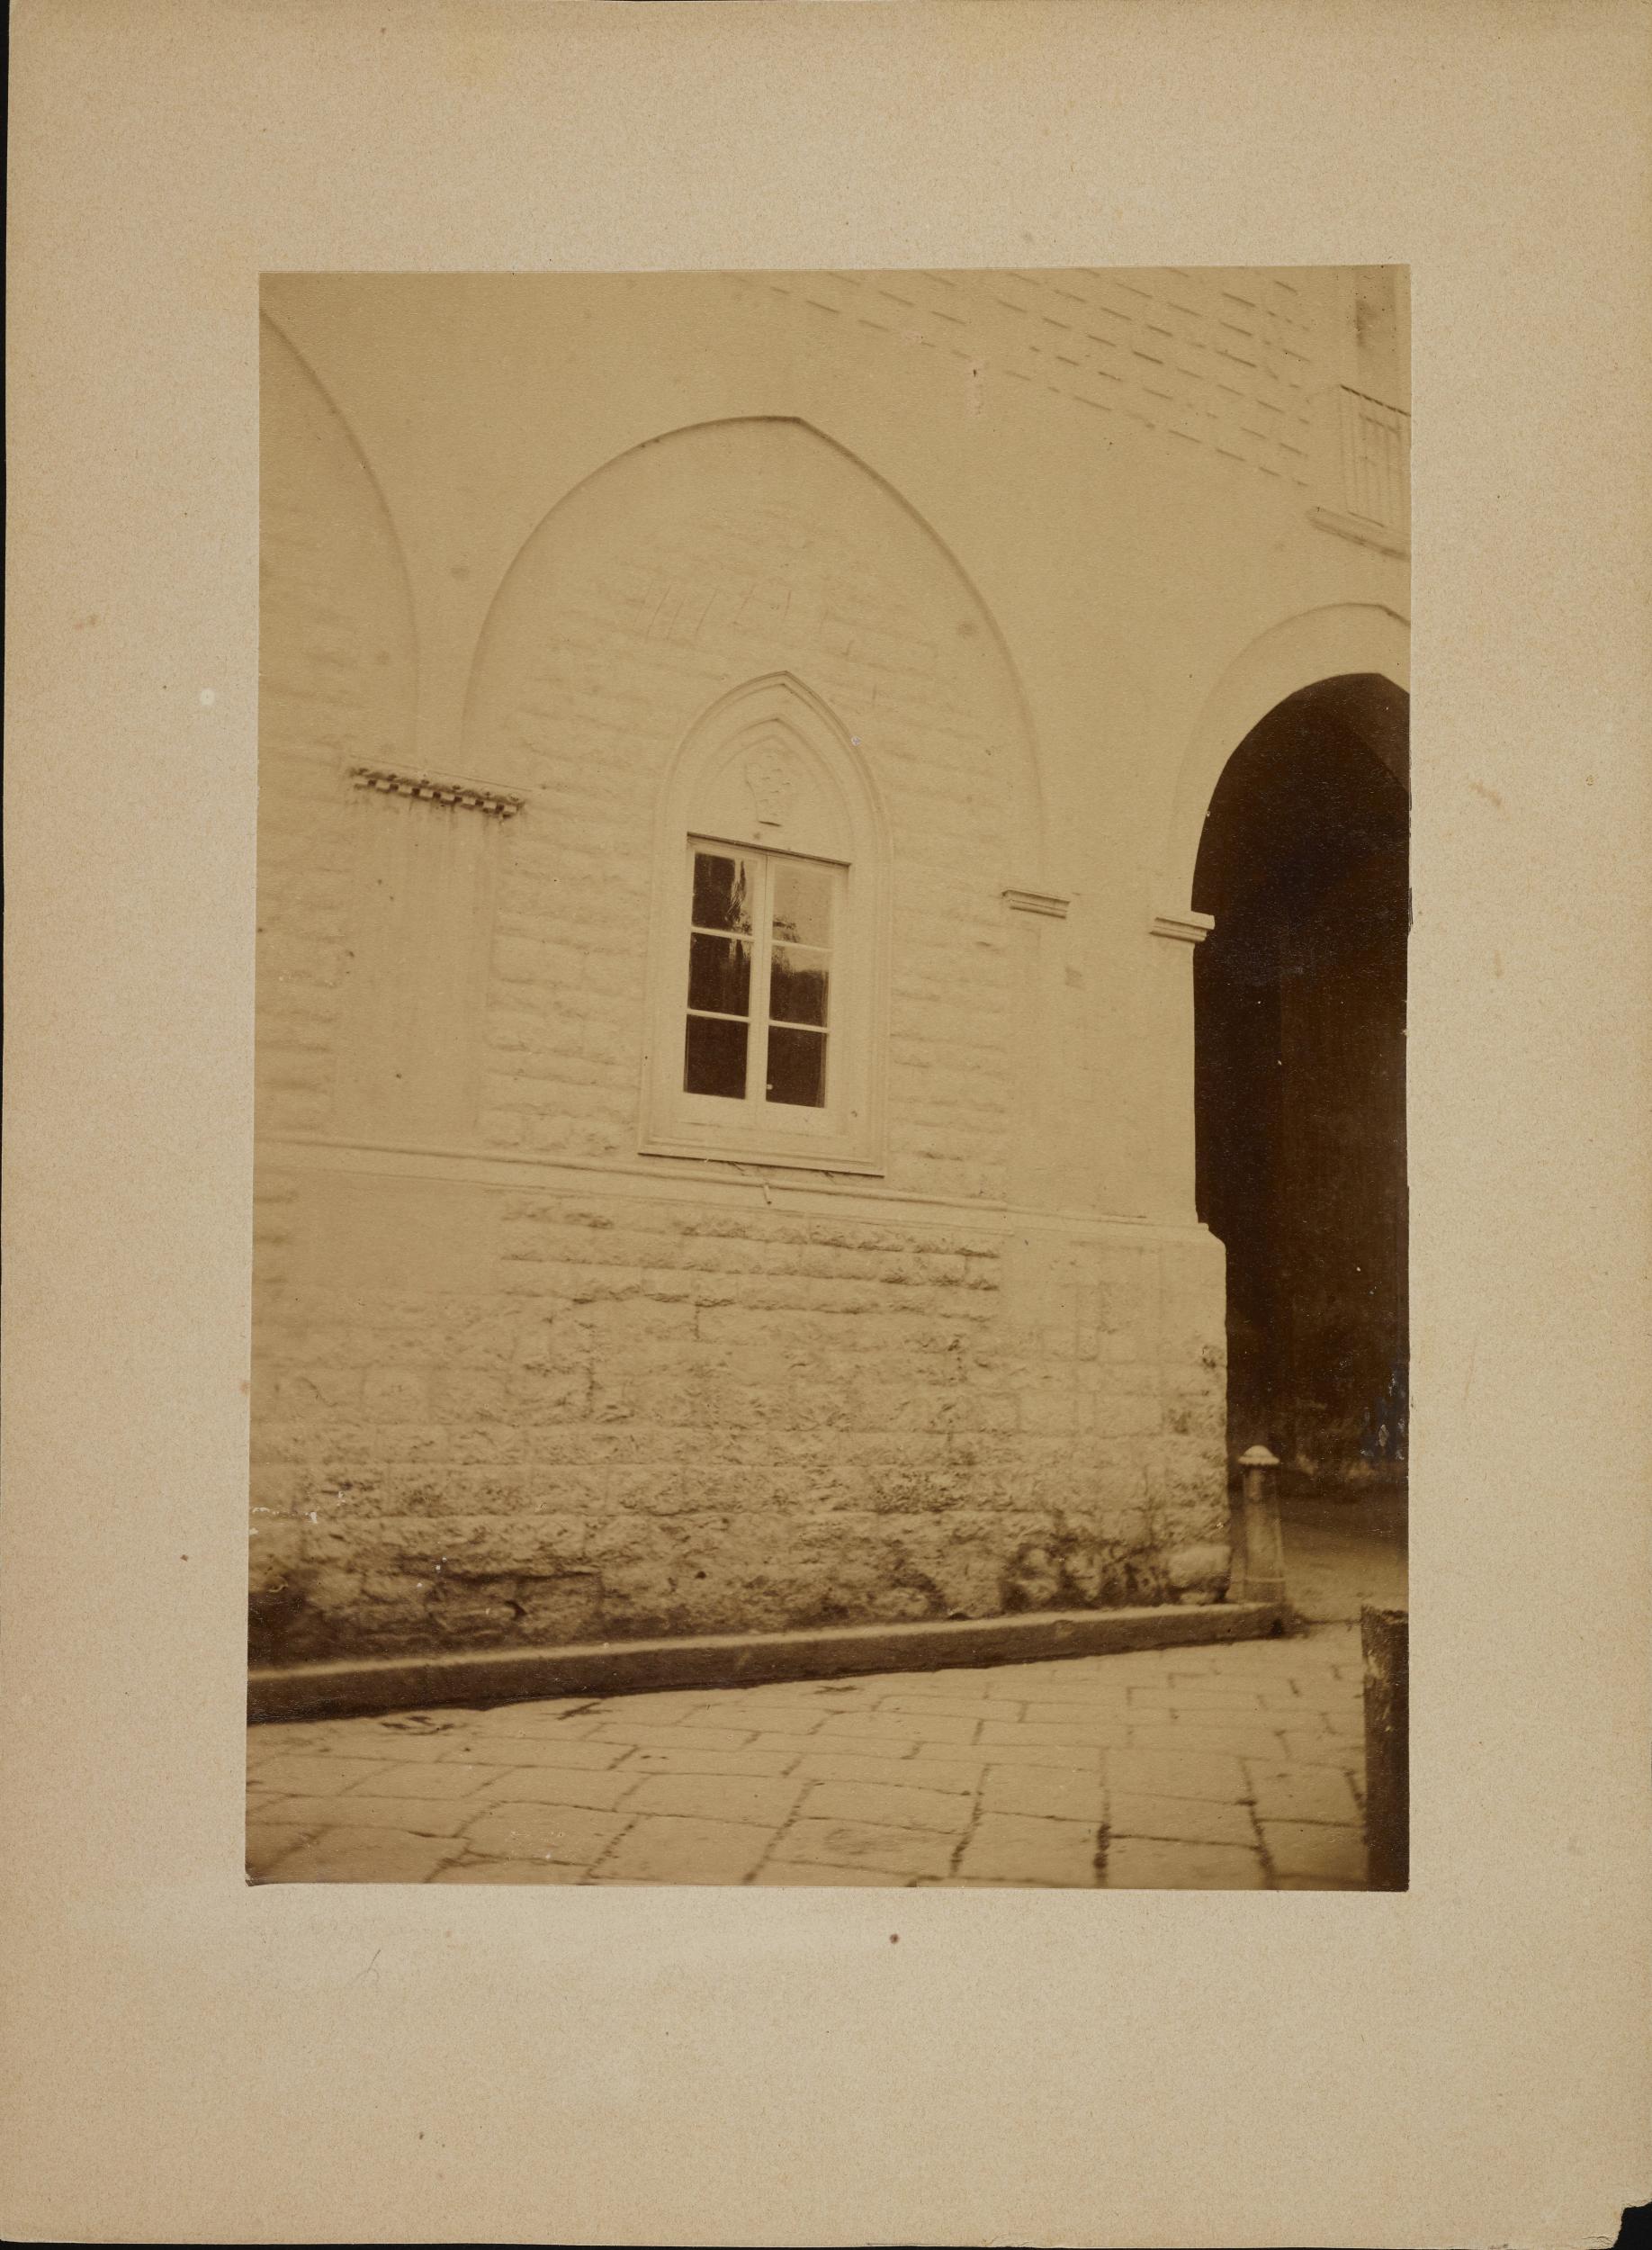 Fotografo non identificato, Barletta - Palazzo Bonelli, particolare di una finestra, 1880 ca., albumina/carta, 15,6x21,8 cm, MPI312827